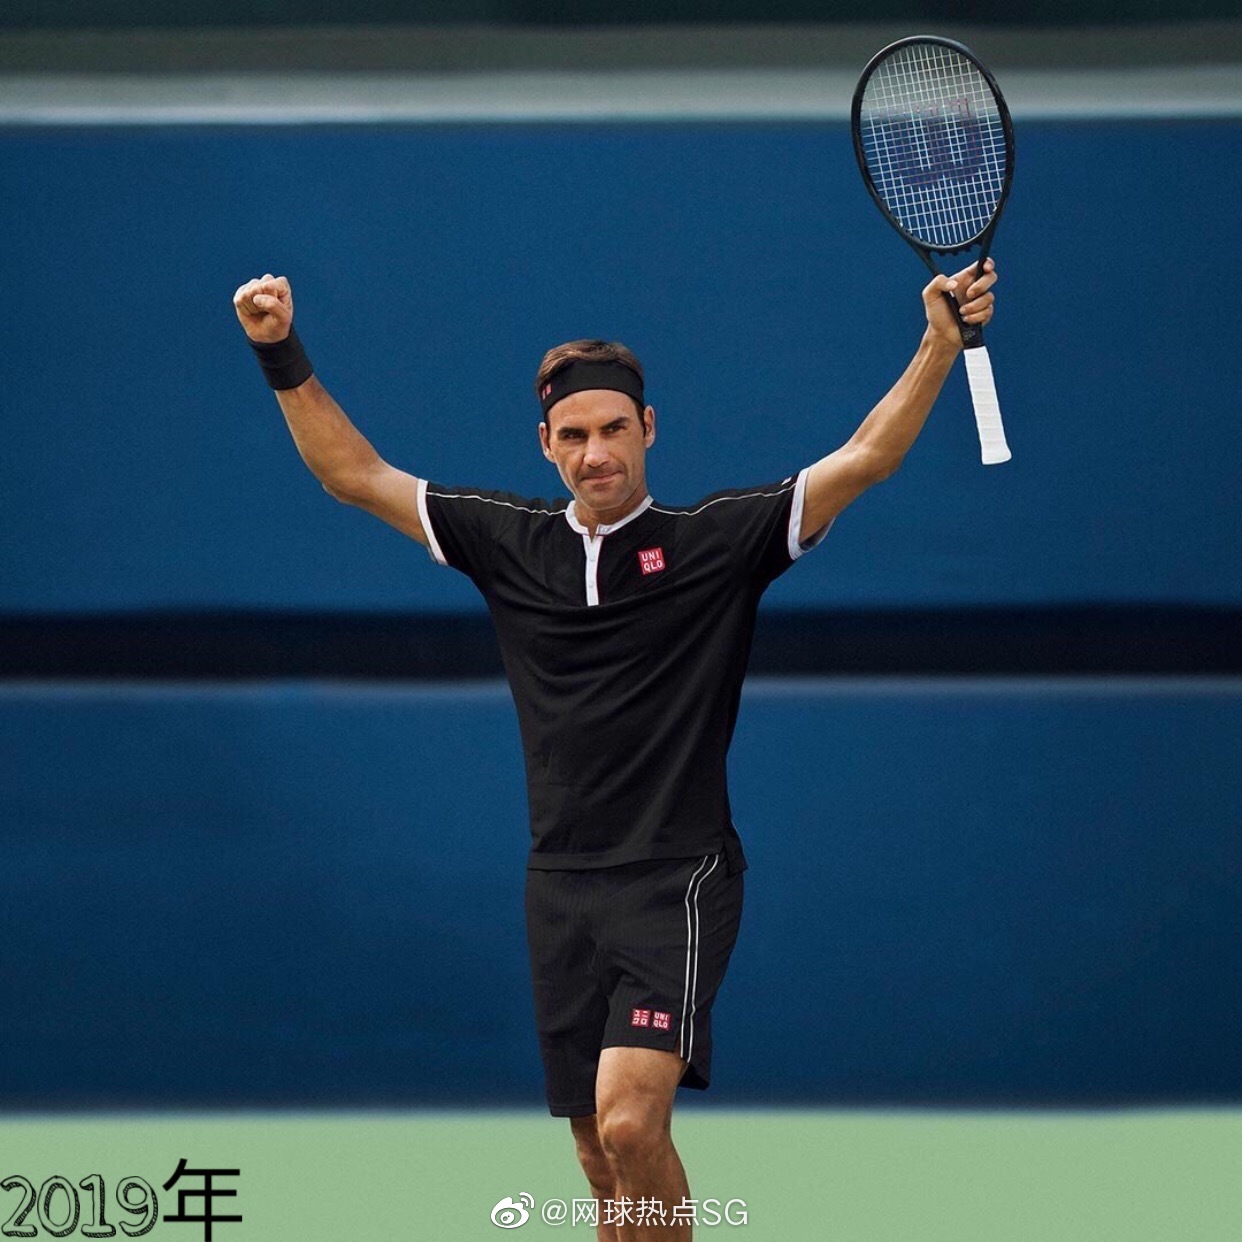 Wimbledon 2017 - Roger Federer Photo (40619060) - Fanpop